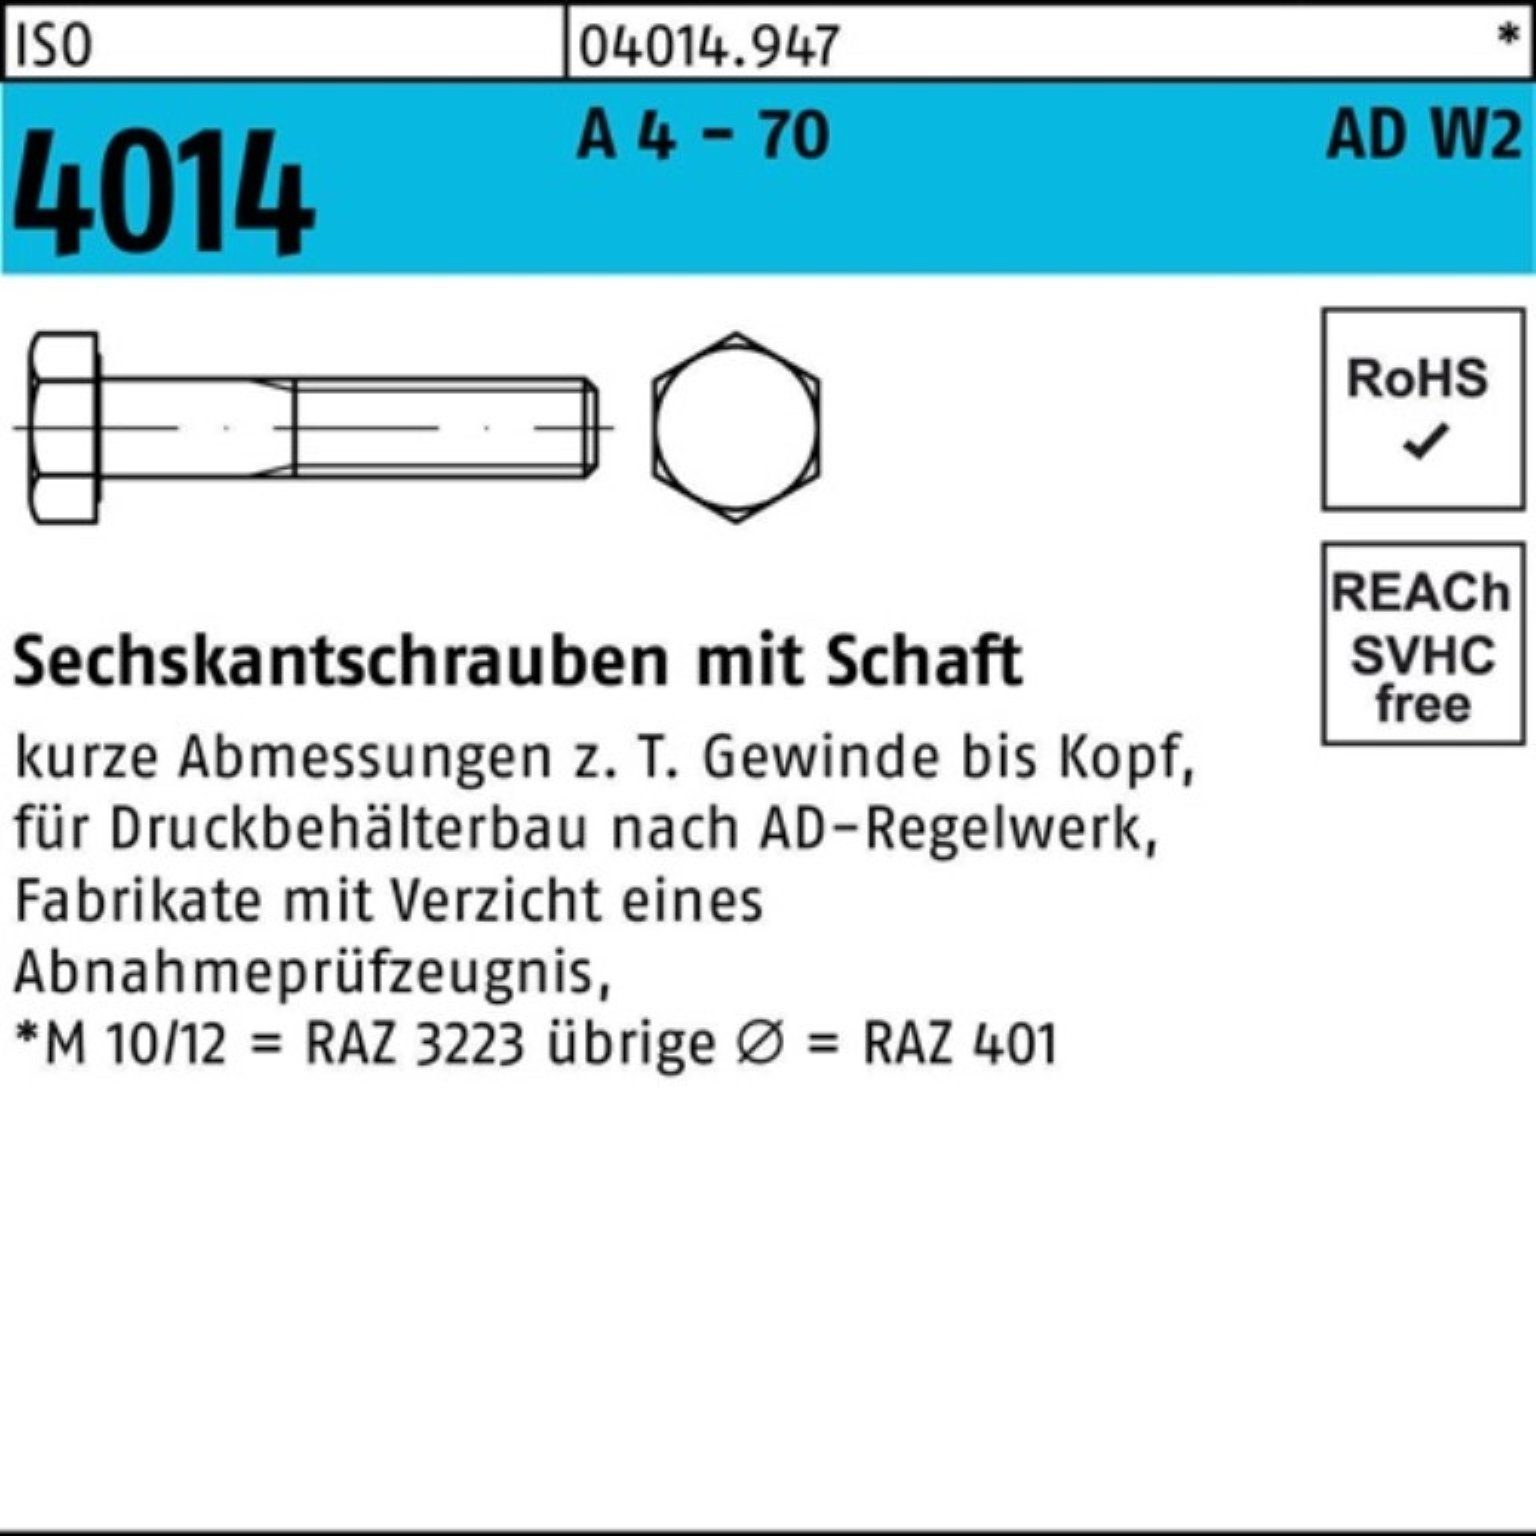 Bufab Sechskantschraube 100er Pack Sechskantschraube ISO 4014 Schaft M16x 160 A 4 - 70 AD-W2 1